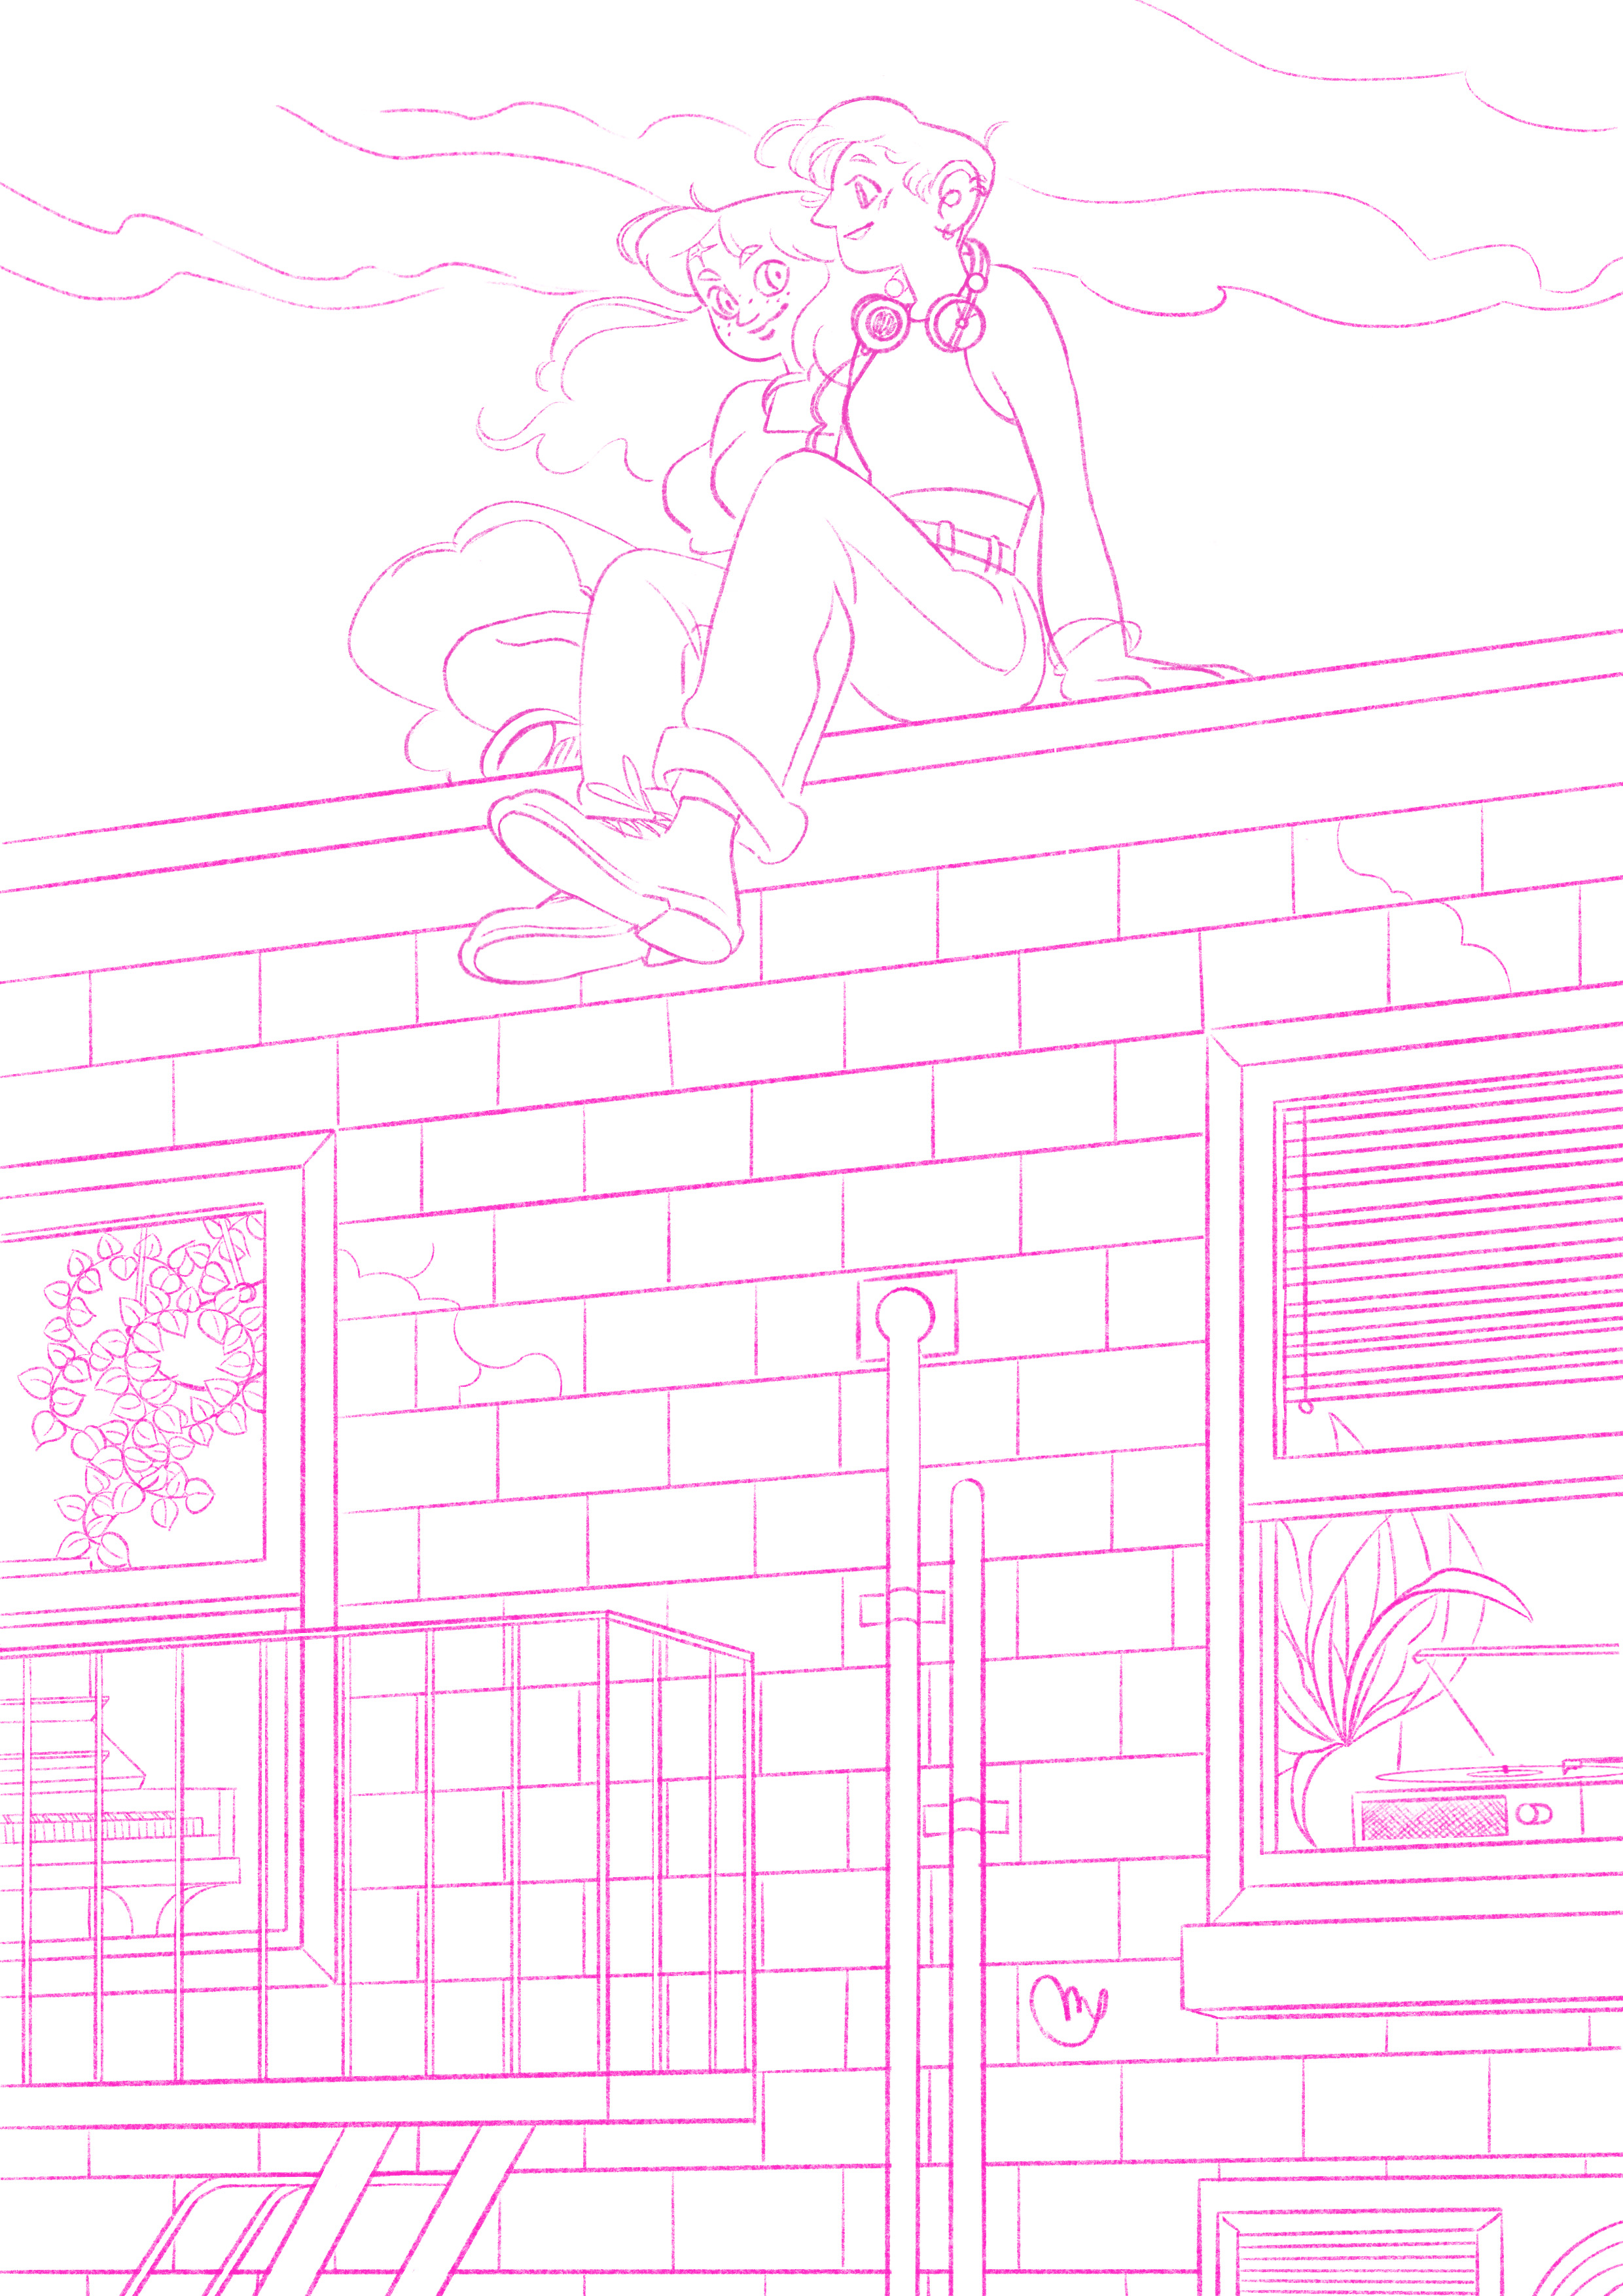 rooftop-dreams-sketch